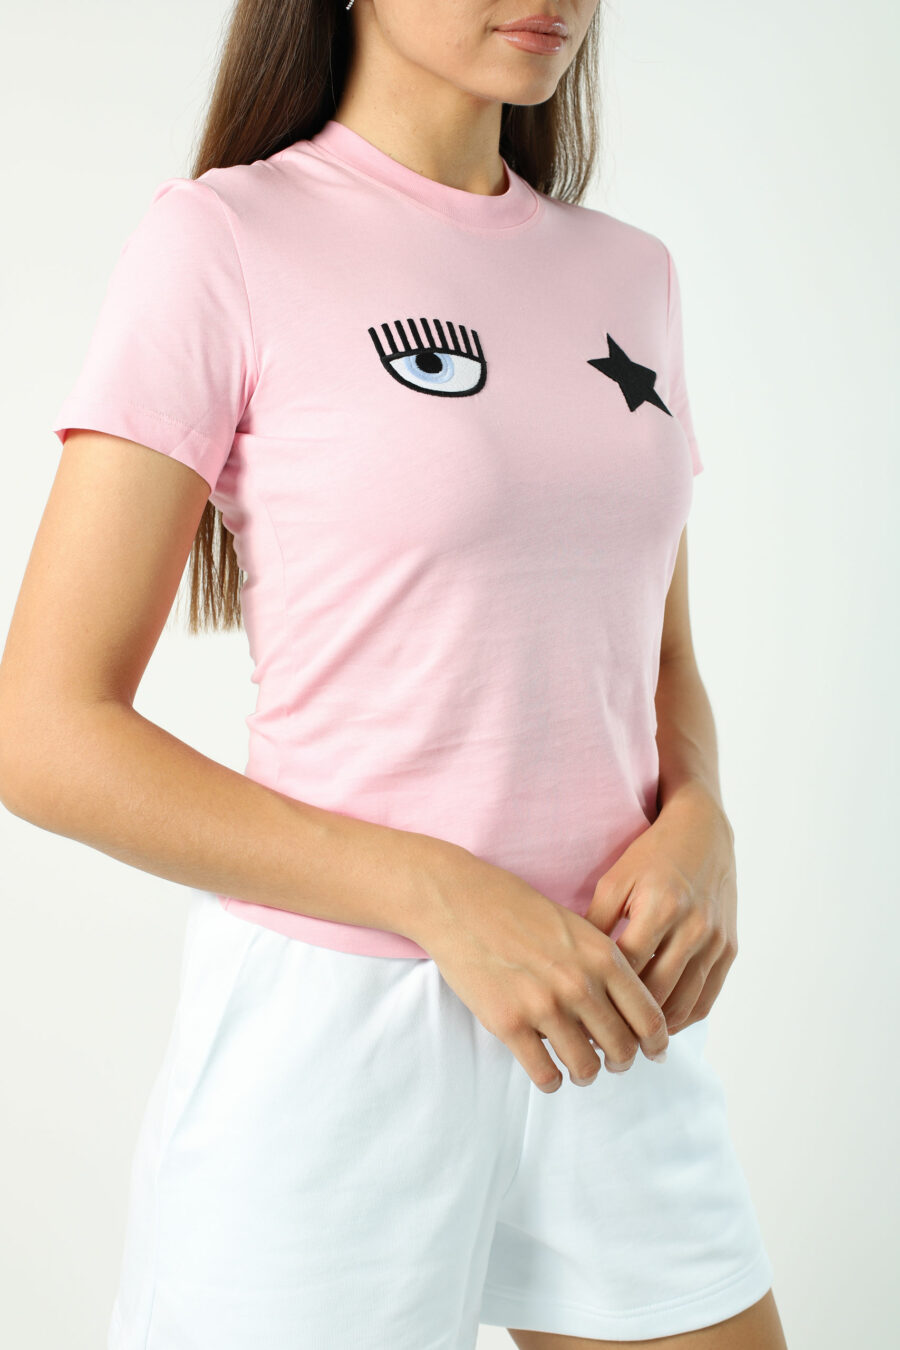 Rosa T-shirt mit Auge und Stern - Fotos 2695